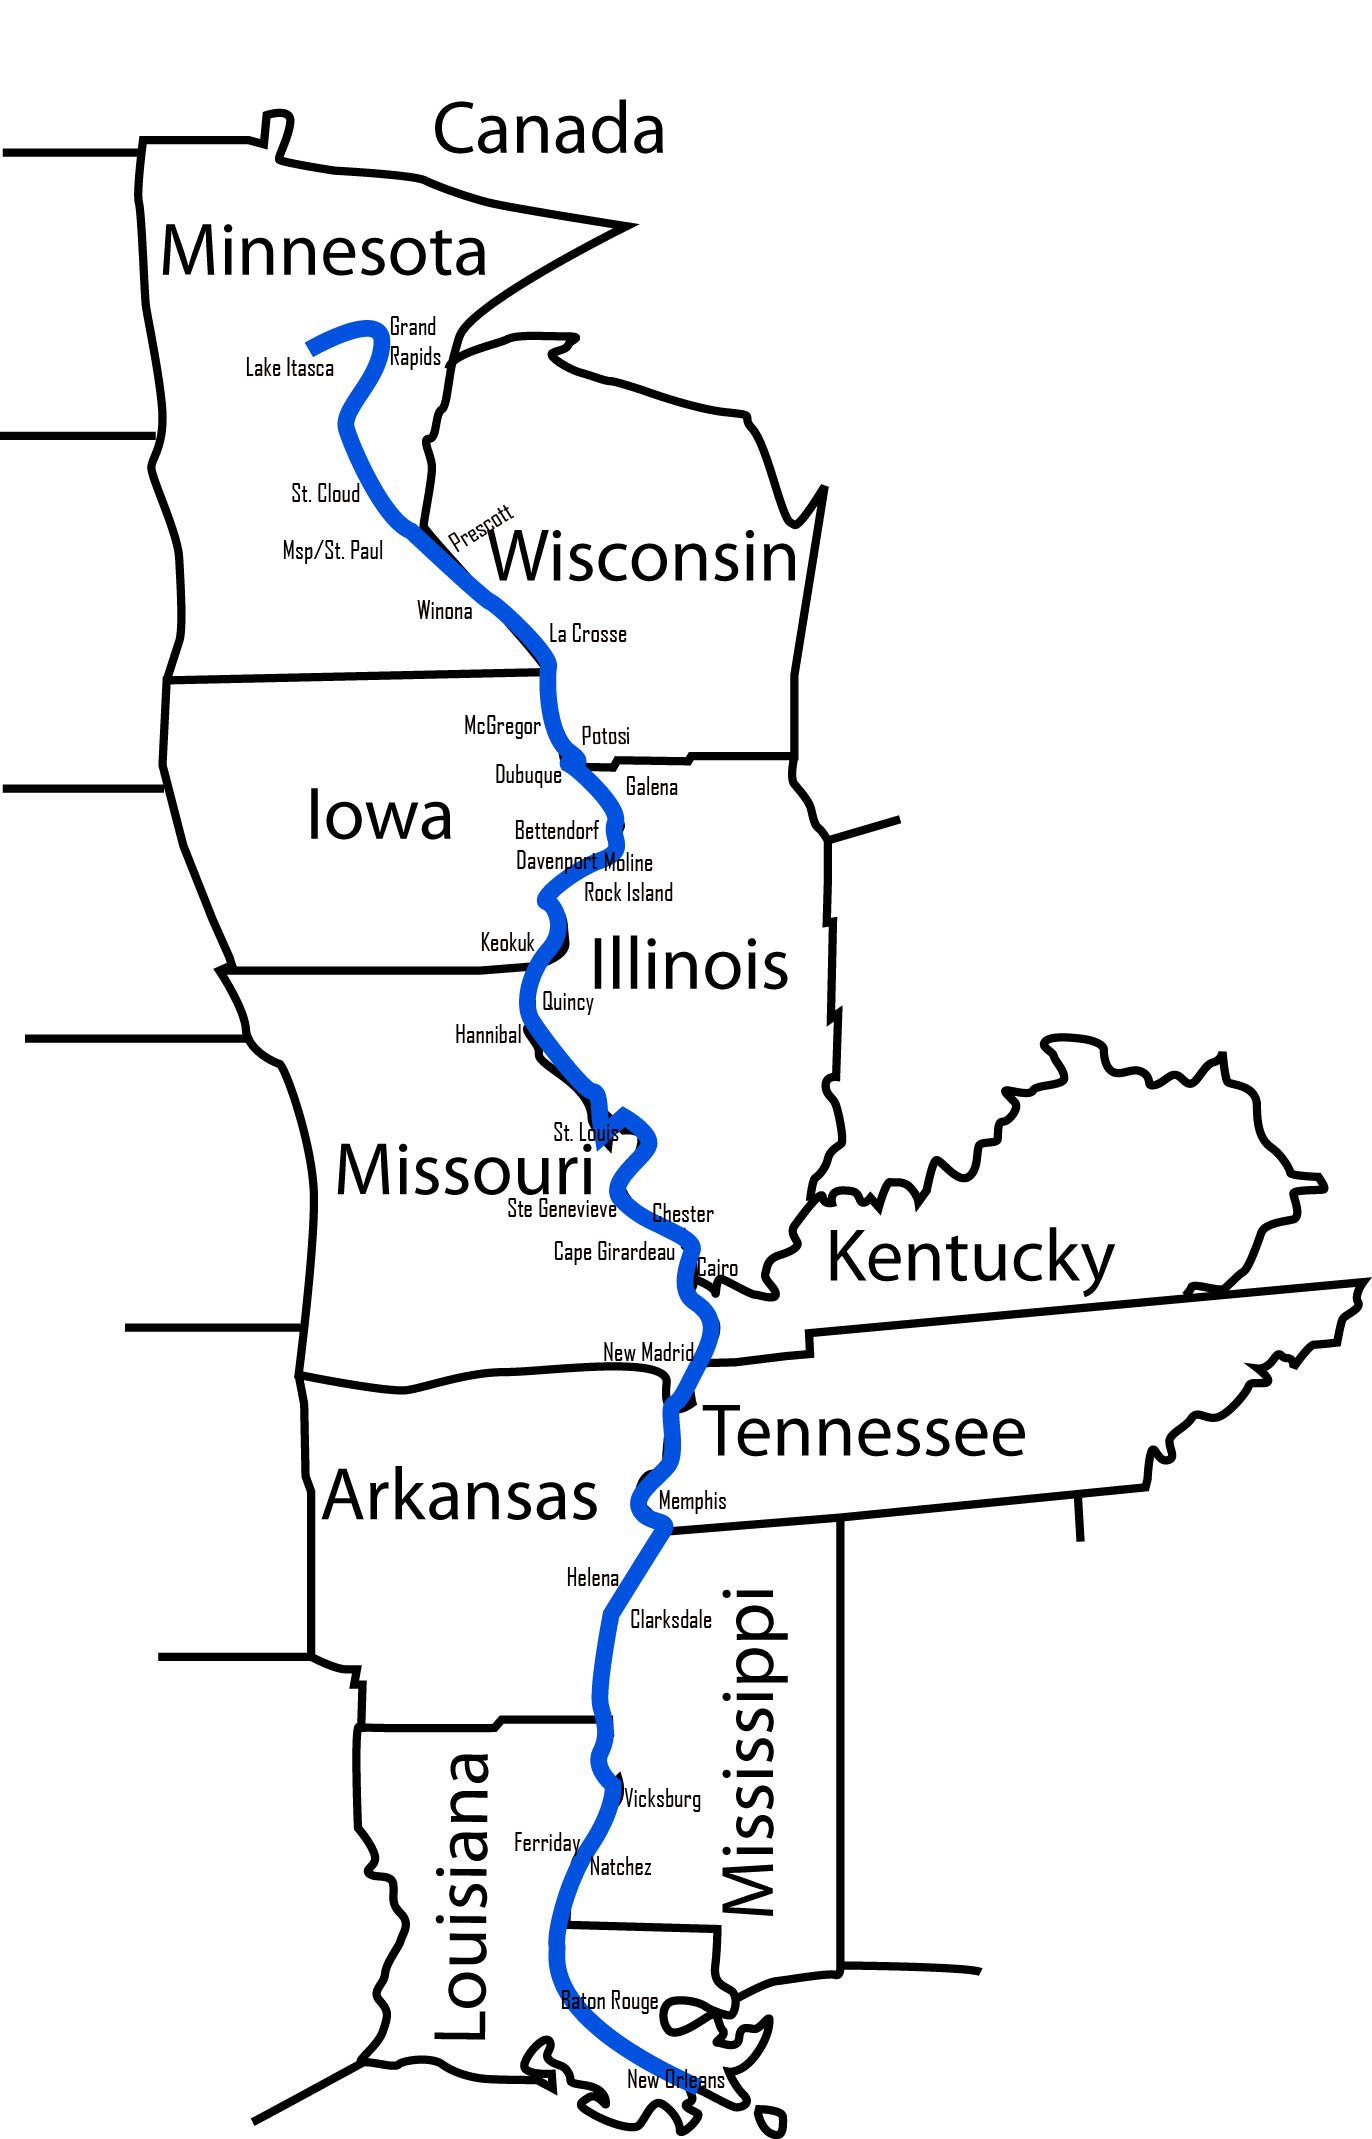 Левый приток реки миссисипи. Миссисипи с притоком Миссури на карте. Притоки Миссисипи на карте. Исток реки Миссисипи на карте. Течение реки Миссисипи на карте.